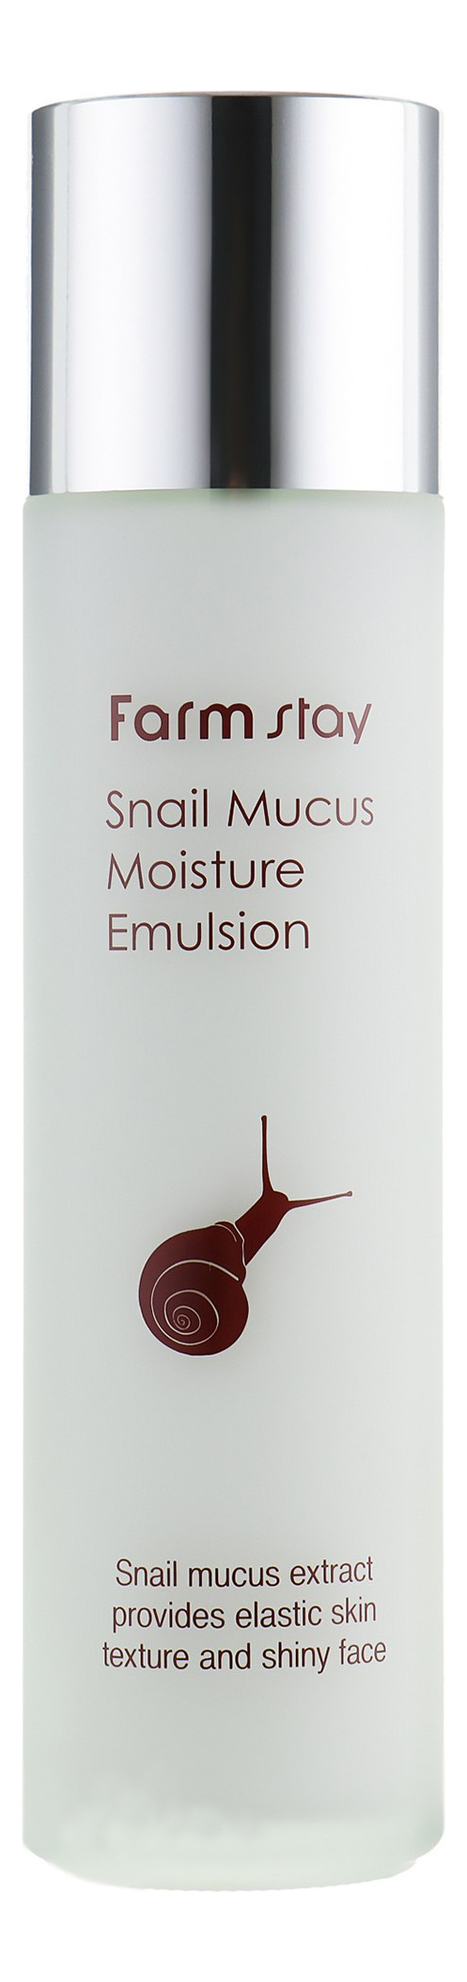 Увлажняющая эмульсия для лица с муцином улитки Snail Mucus Moisture Emulsion 150мл увлажняющая эмульсия для лица с муцином улитки snail mucus moisture emulsion 150мл